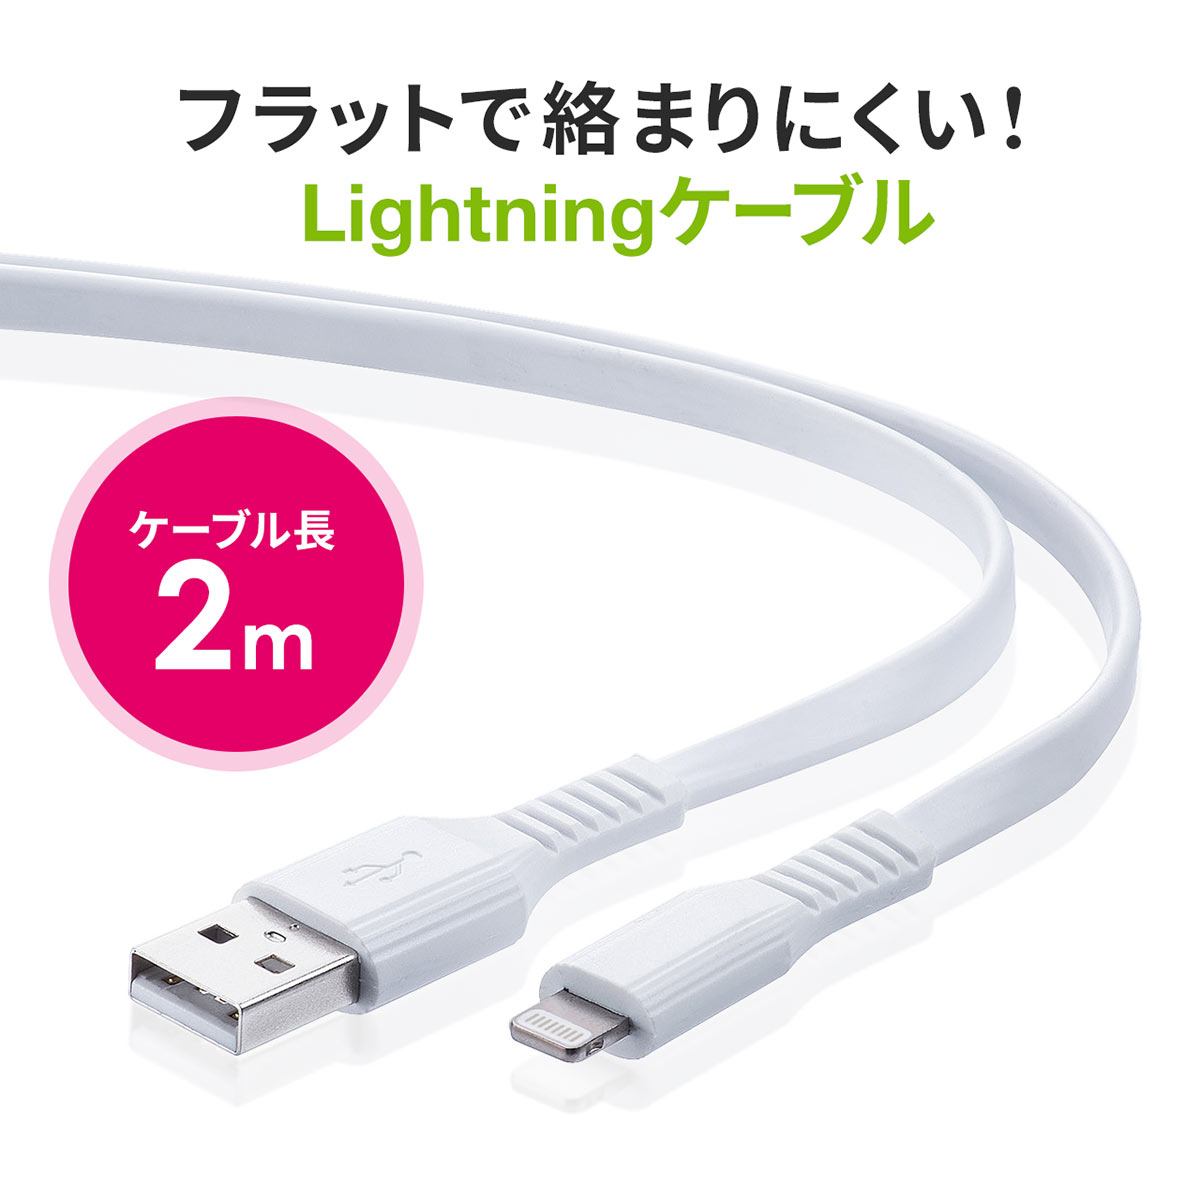 ライトニングケーブル iPhone iPad Lightning 2m フラットケーブル Mfi認証品 充電 充電ケーブル 500-IPLM026WK